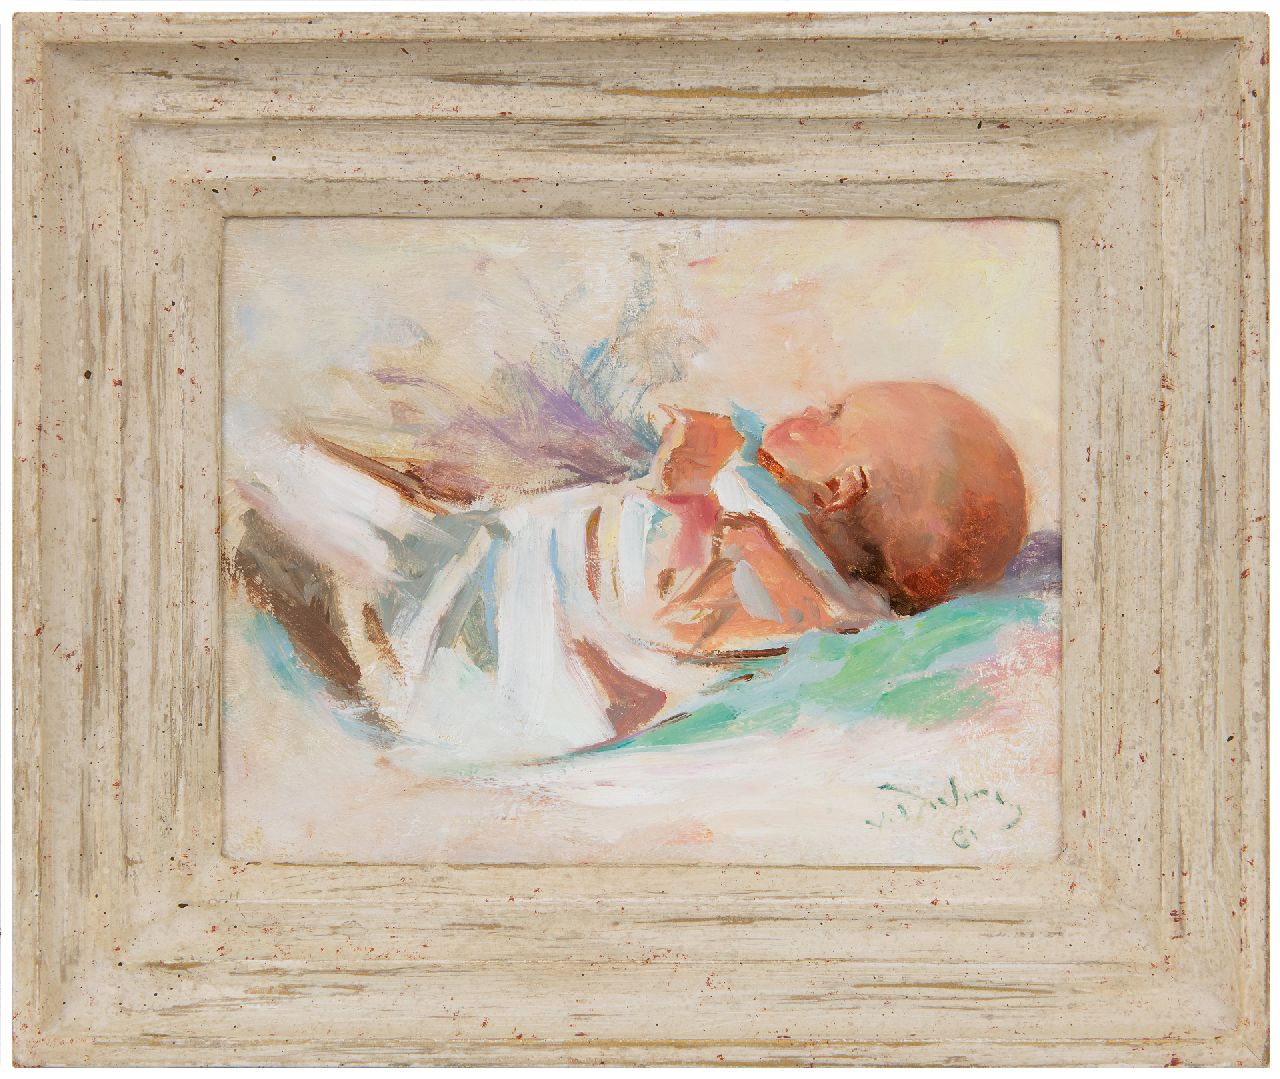 Dülmen Krumpelmann E.B. von | Erasmus Bernhard von Dülmen Krumpelmann | Schilderijen te koop aangeboden | Baby, olieverf op paneel 18,5 x 23,8 cm, gesigneerd rechtsonder